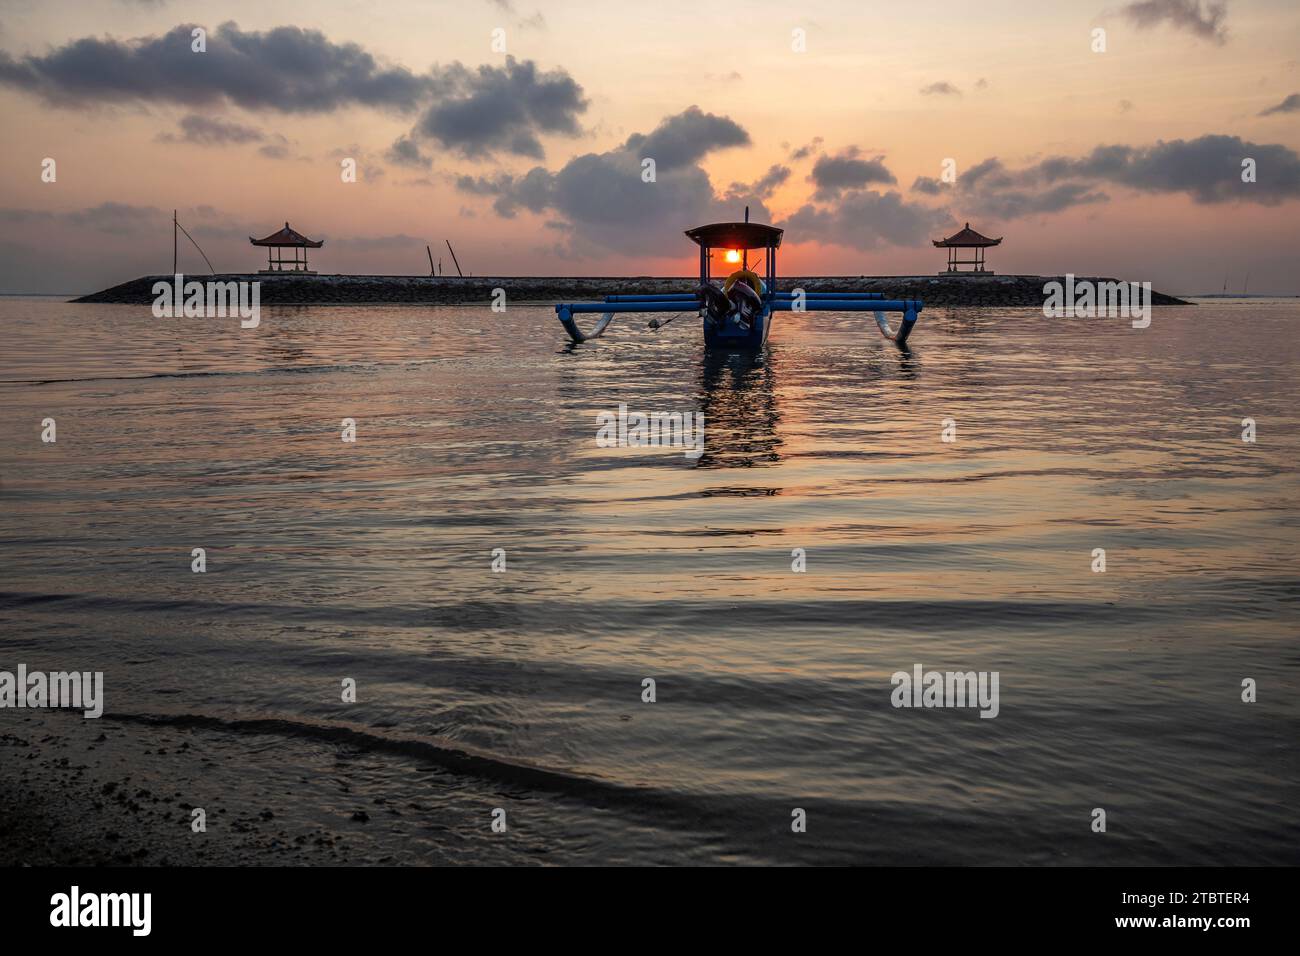 Paysage matinal pris sur une plage de sable, vue sur la mer à l'horizon avec de petits temples dans l'eau et un jukung, un bateau de pêche traditionnel dans la mer, lever du soleil à Sanur, Bali, Indonésie Banque D'Images